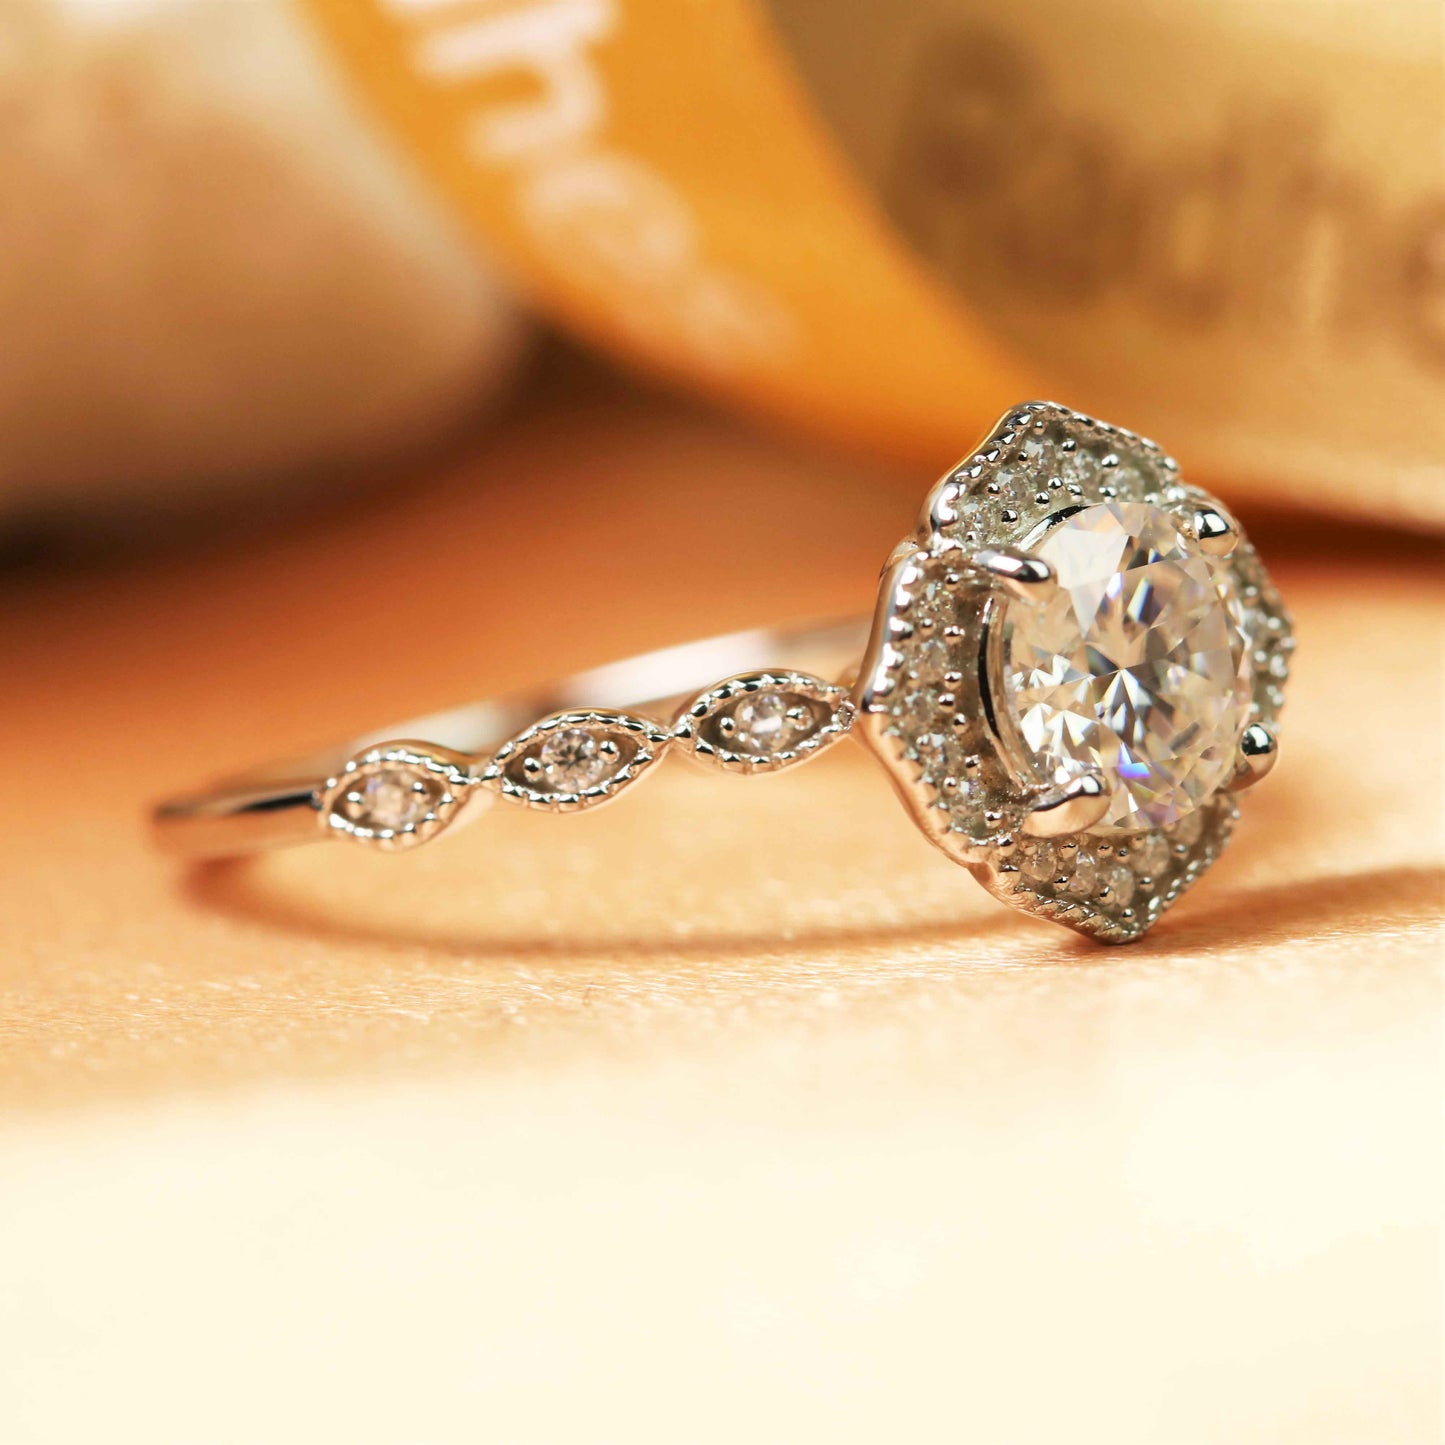 Antique milgrain 1.25 carat Round cut Moissanite Engagement Ring in Gold